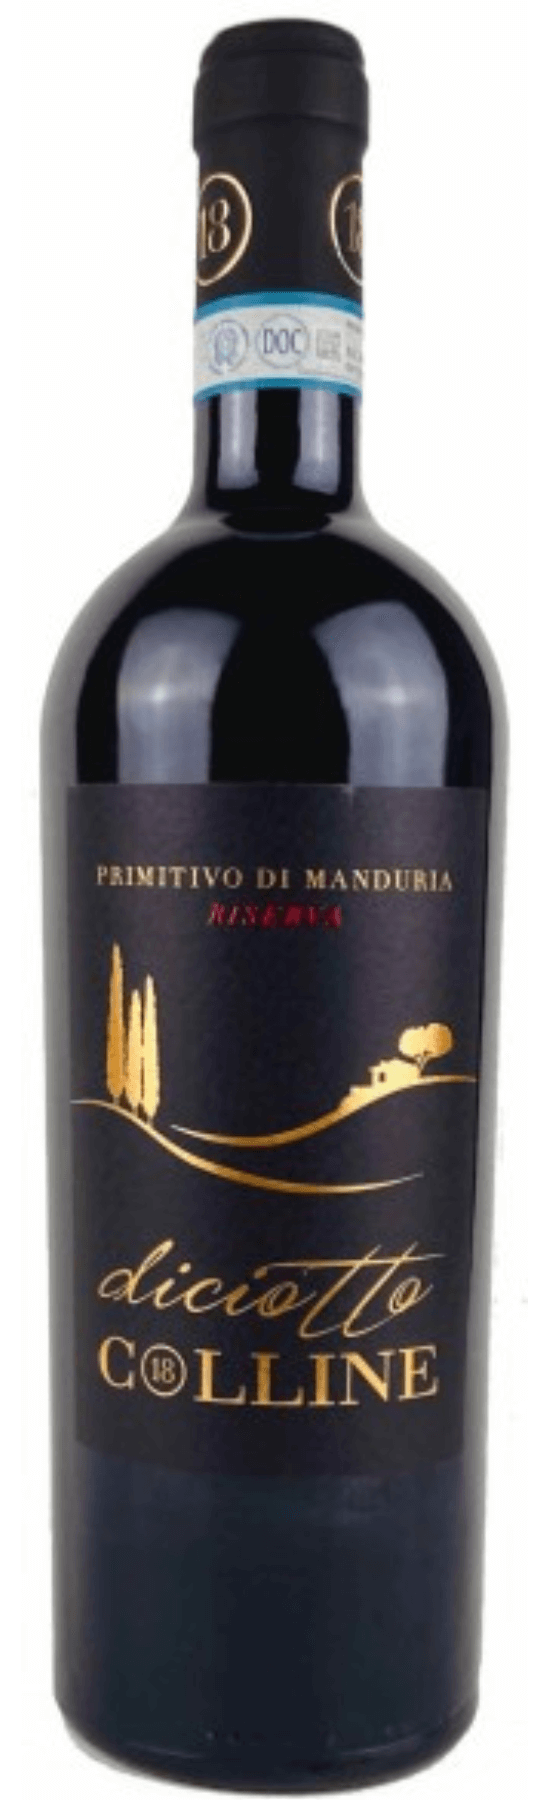 | di Diciotto Vinoscout trocken 2020 Manduria Colline | Primitivo | Rotwein |